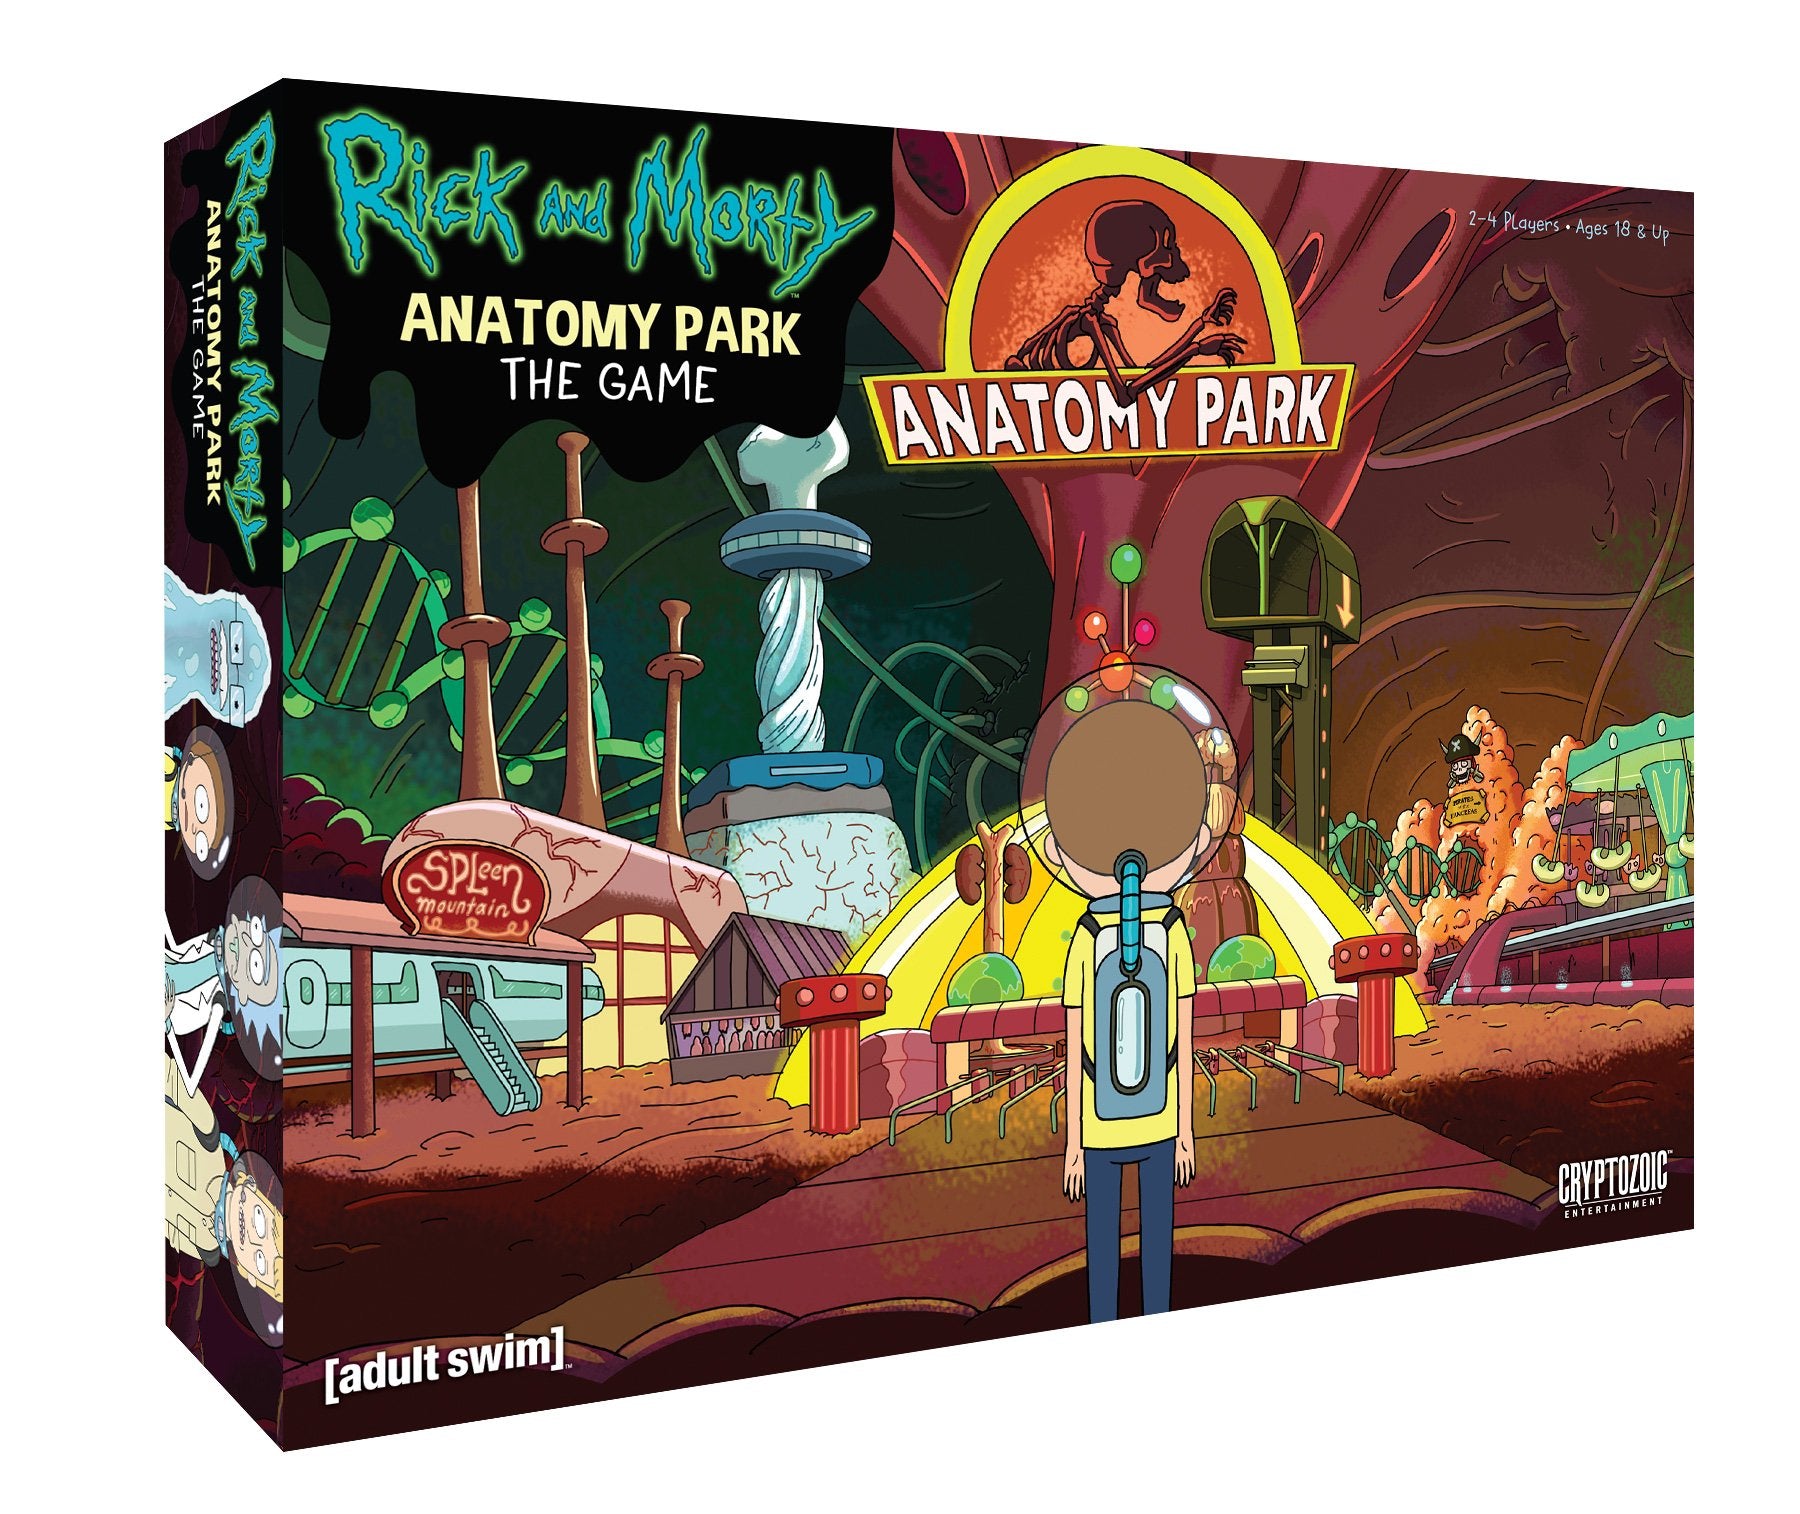 სამაგიდო თამაში რიკი და მორტი: ანატომიის პარკი (Rick & Morty: Anatomy Park) სამაგიდო თამაში